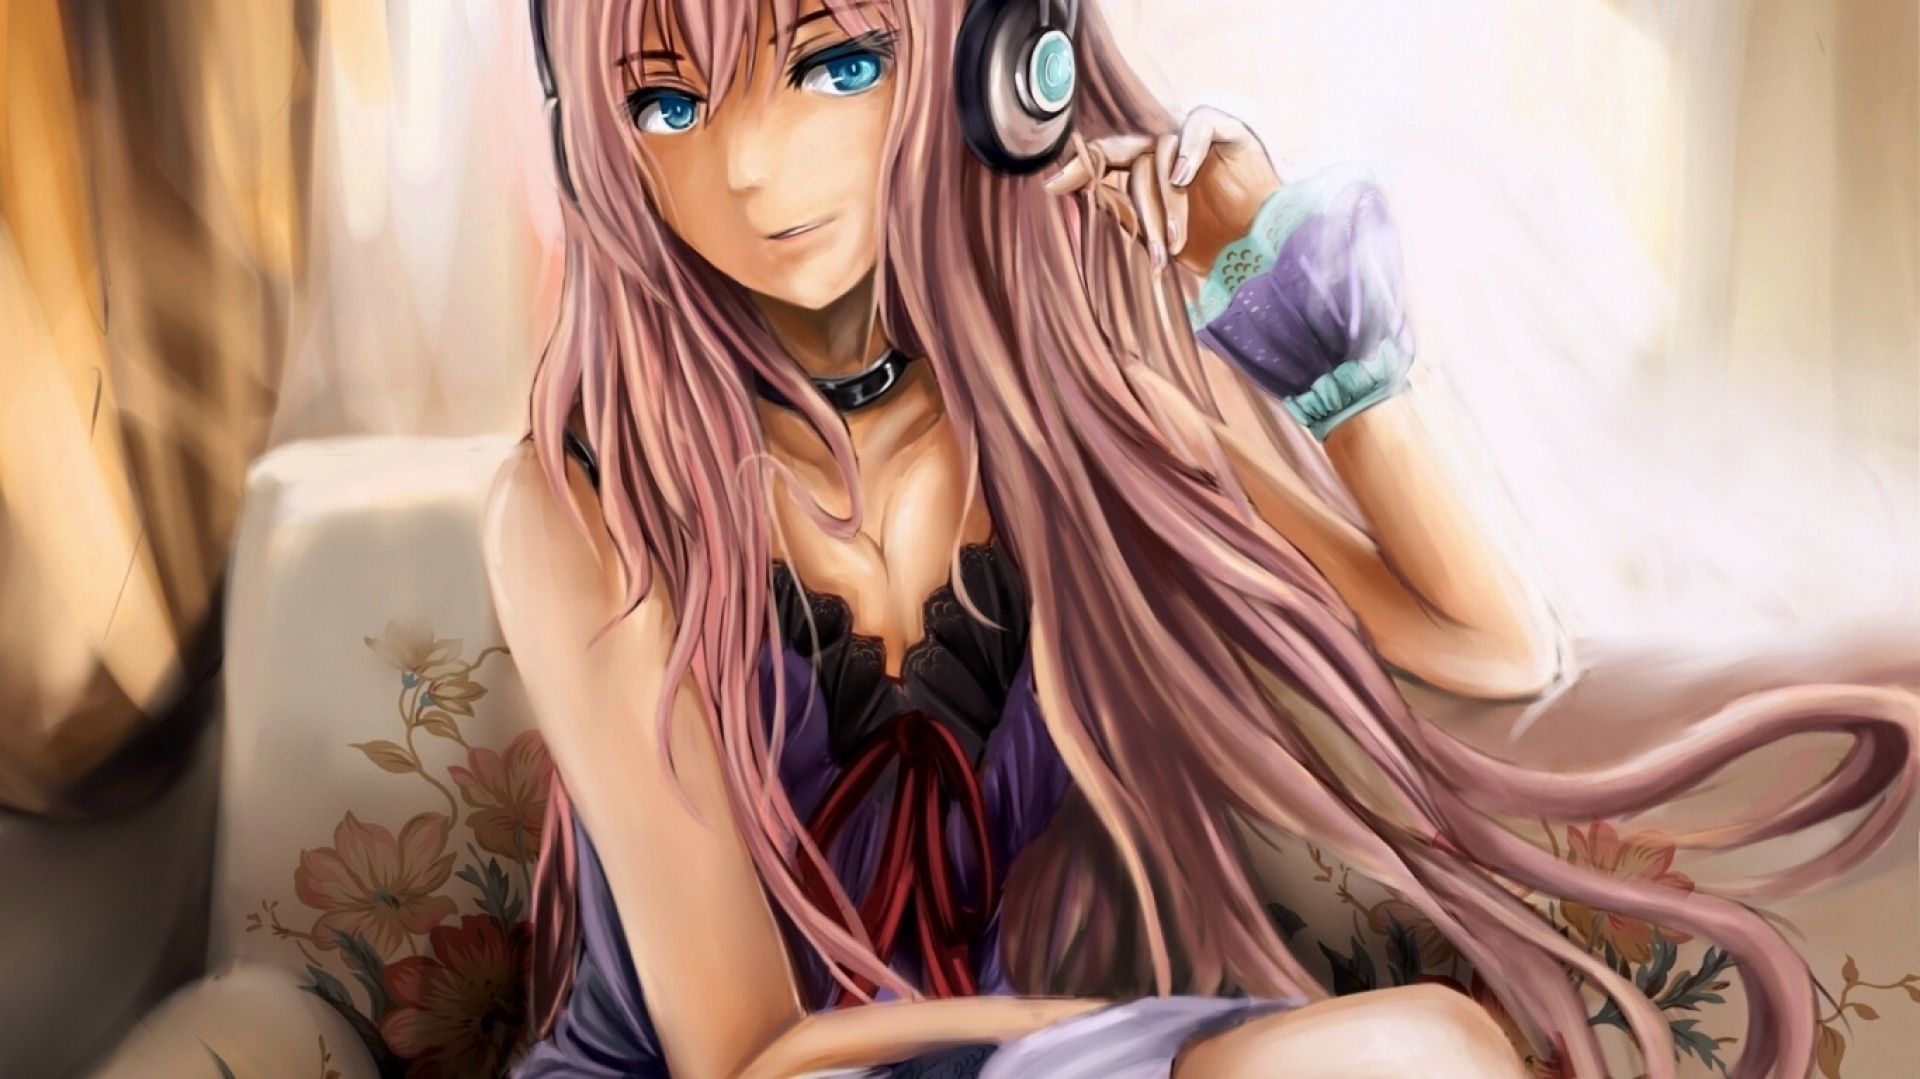 Anime gamer girl